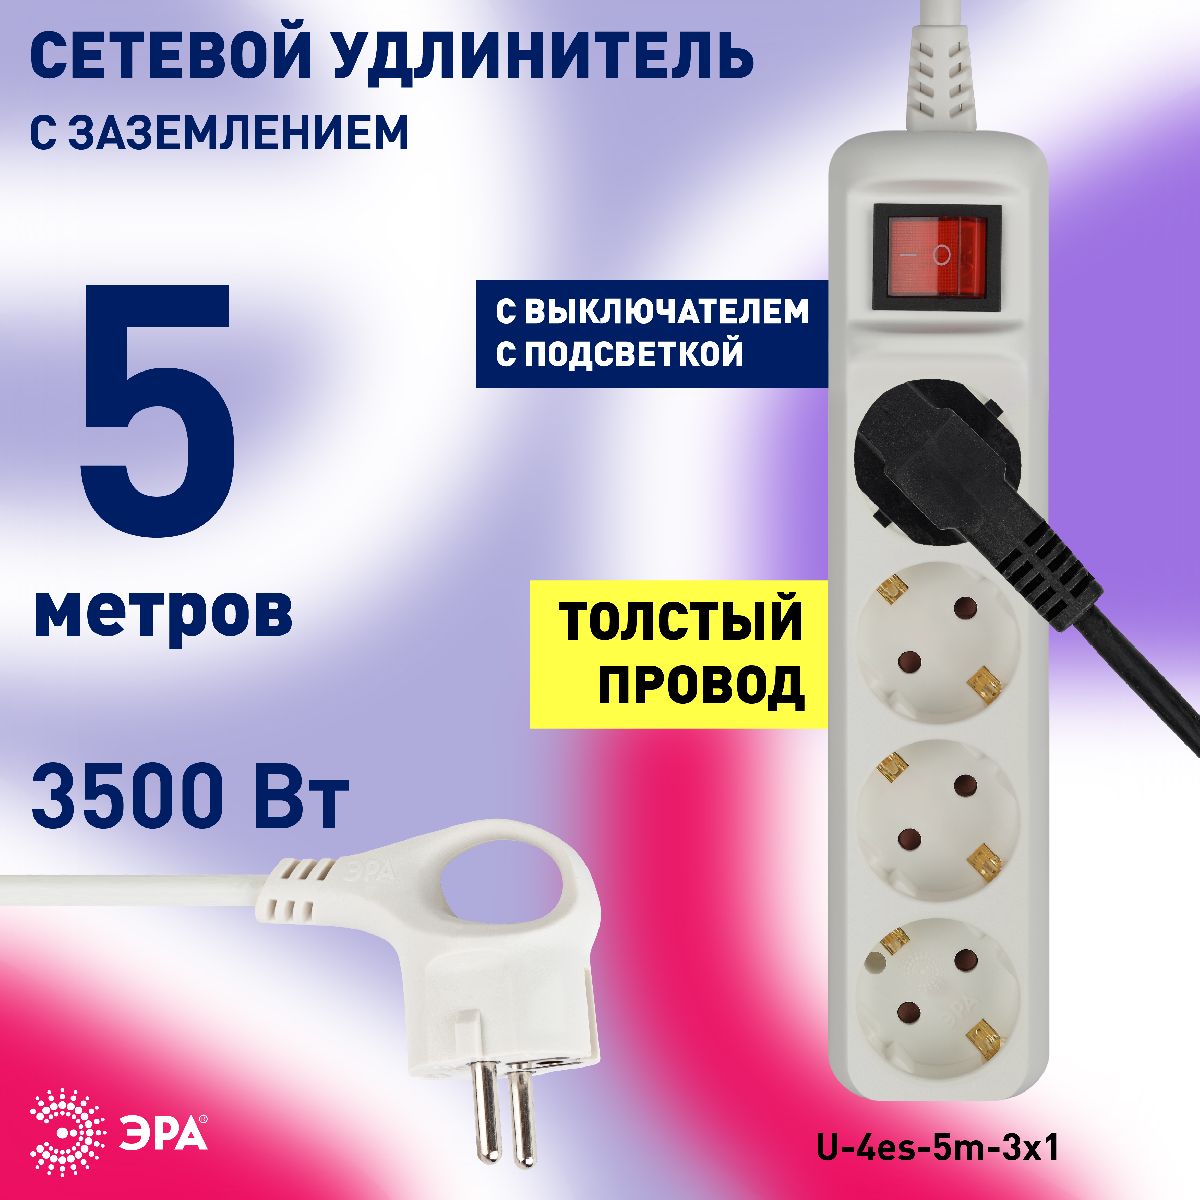 Удлинитель электрический Эра U-4es-5m-3x1 Б0028380